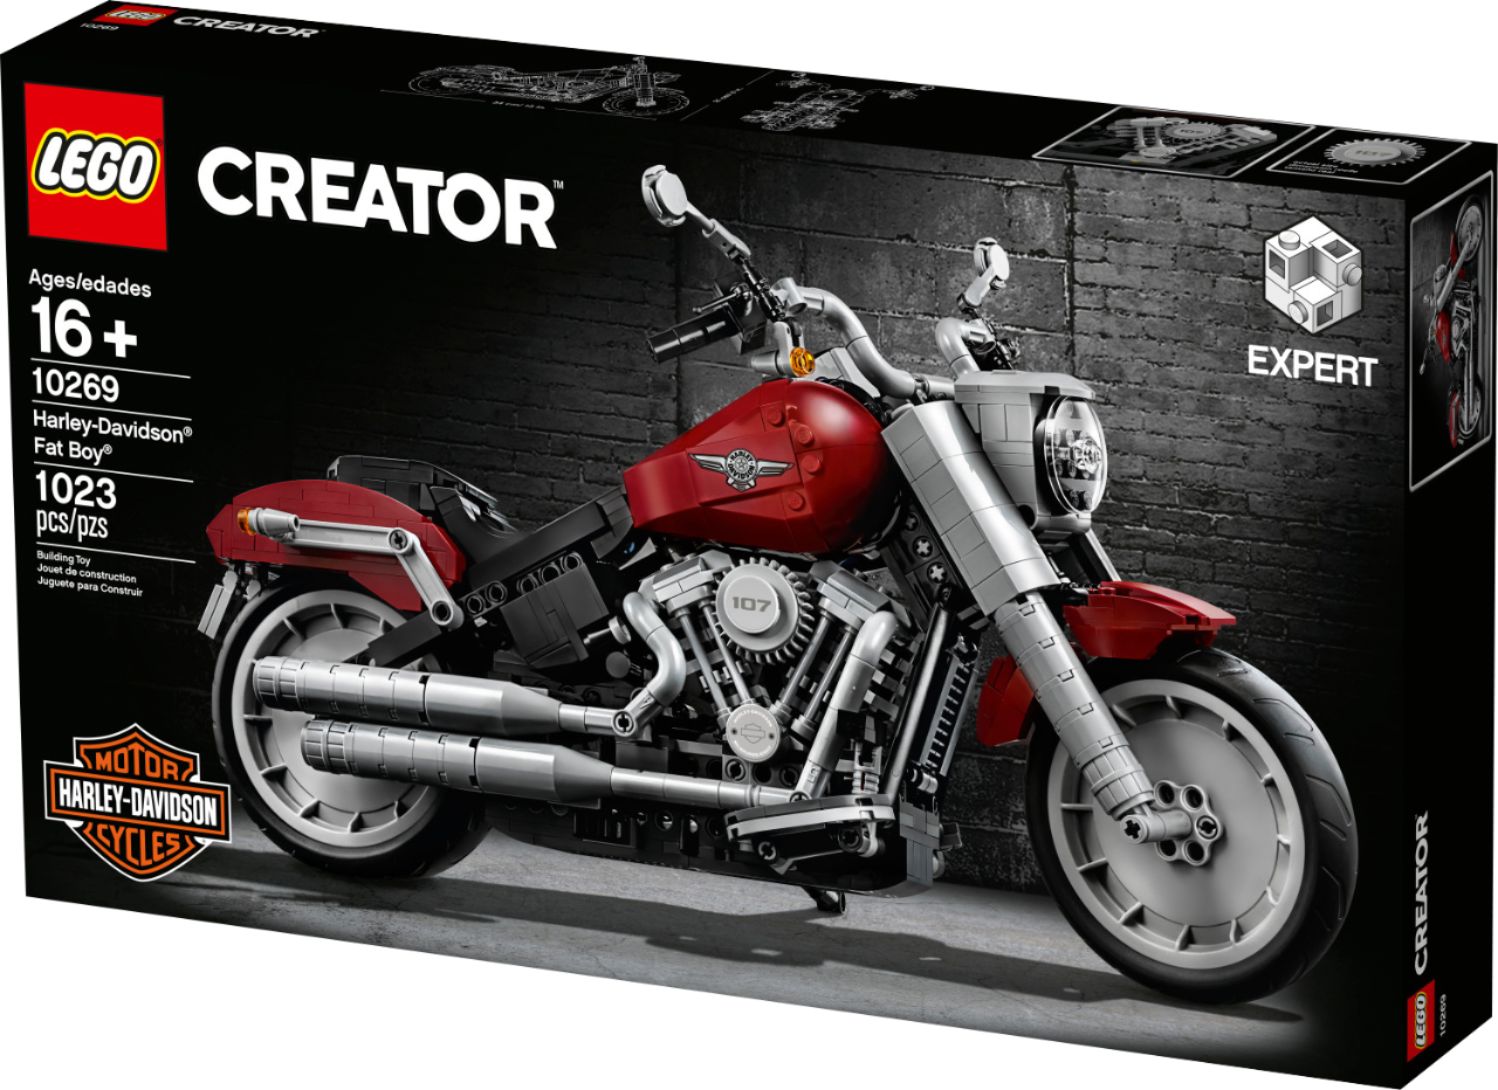 Harley-Davidson® Fat Boy® 10269, Creator Expert